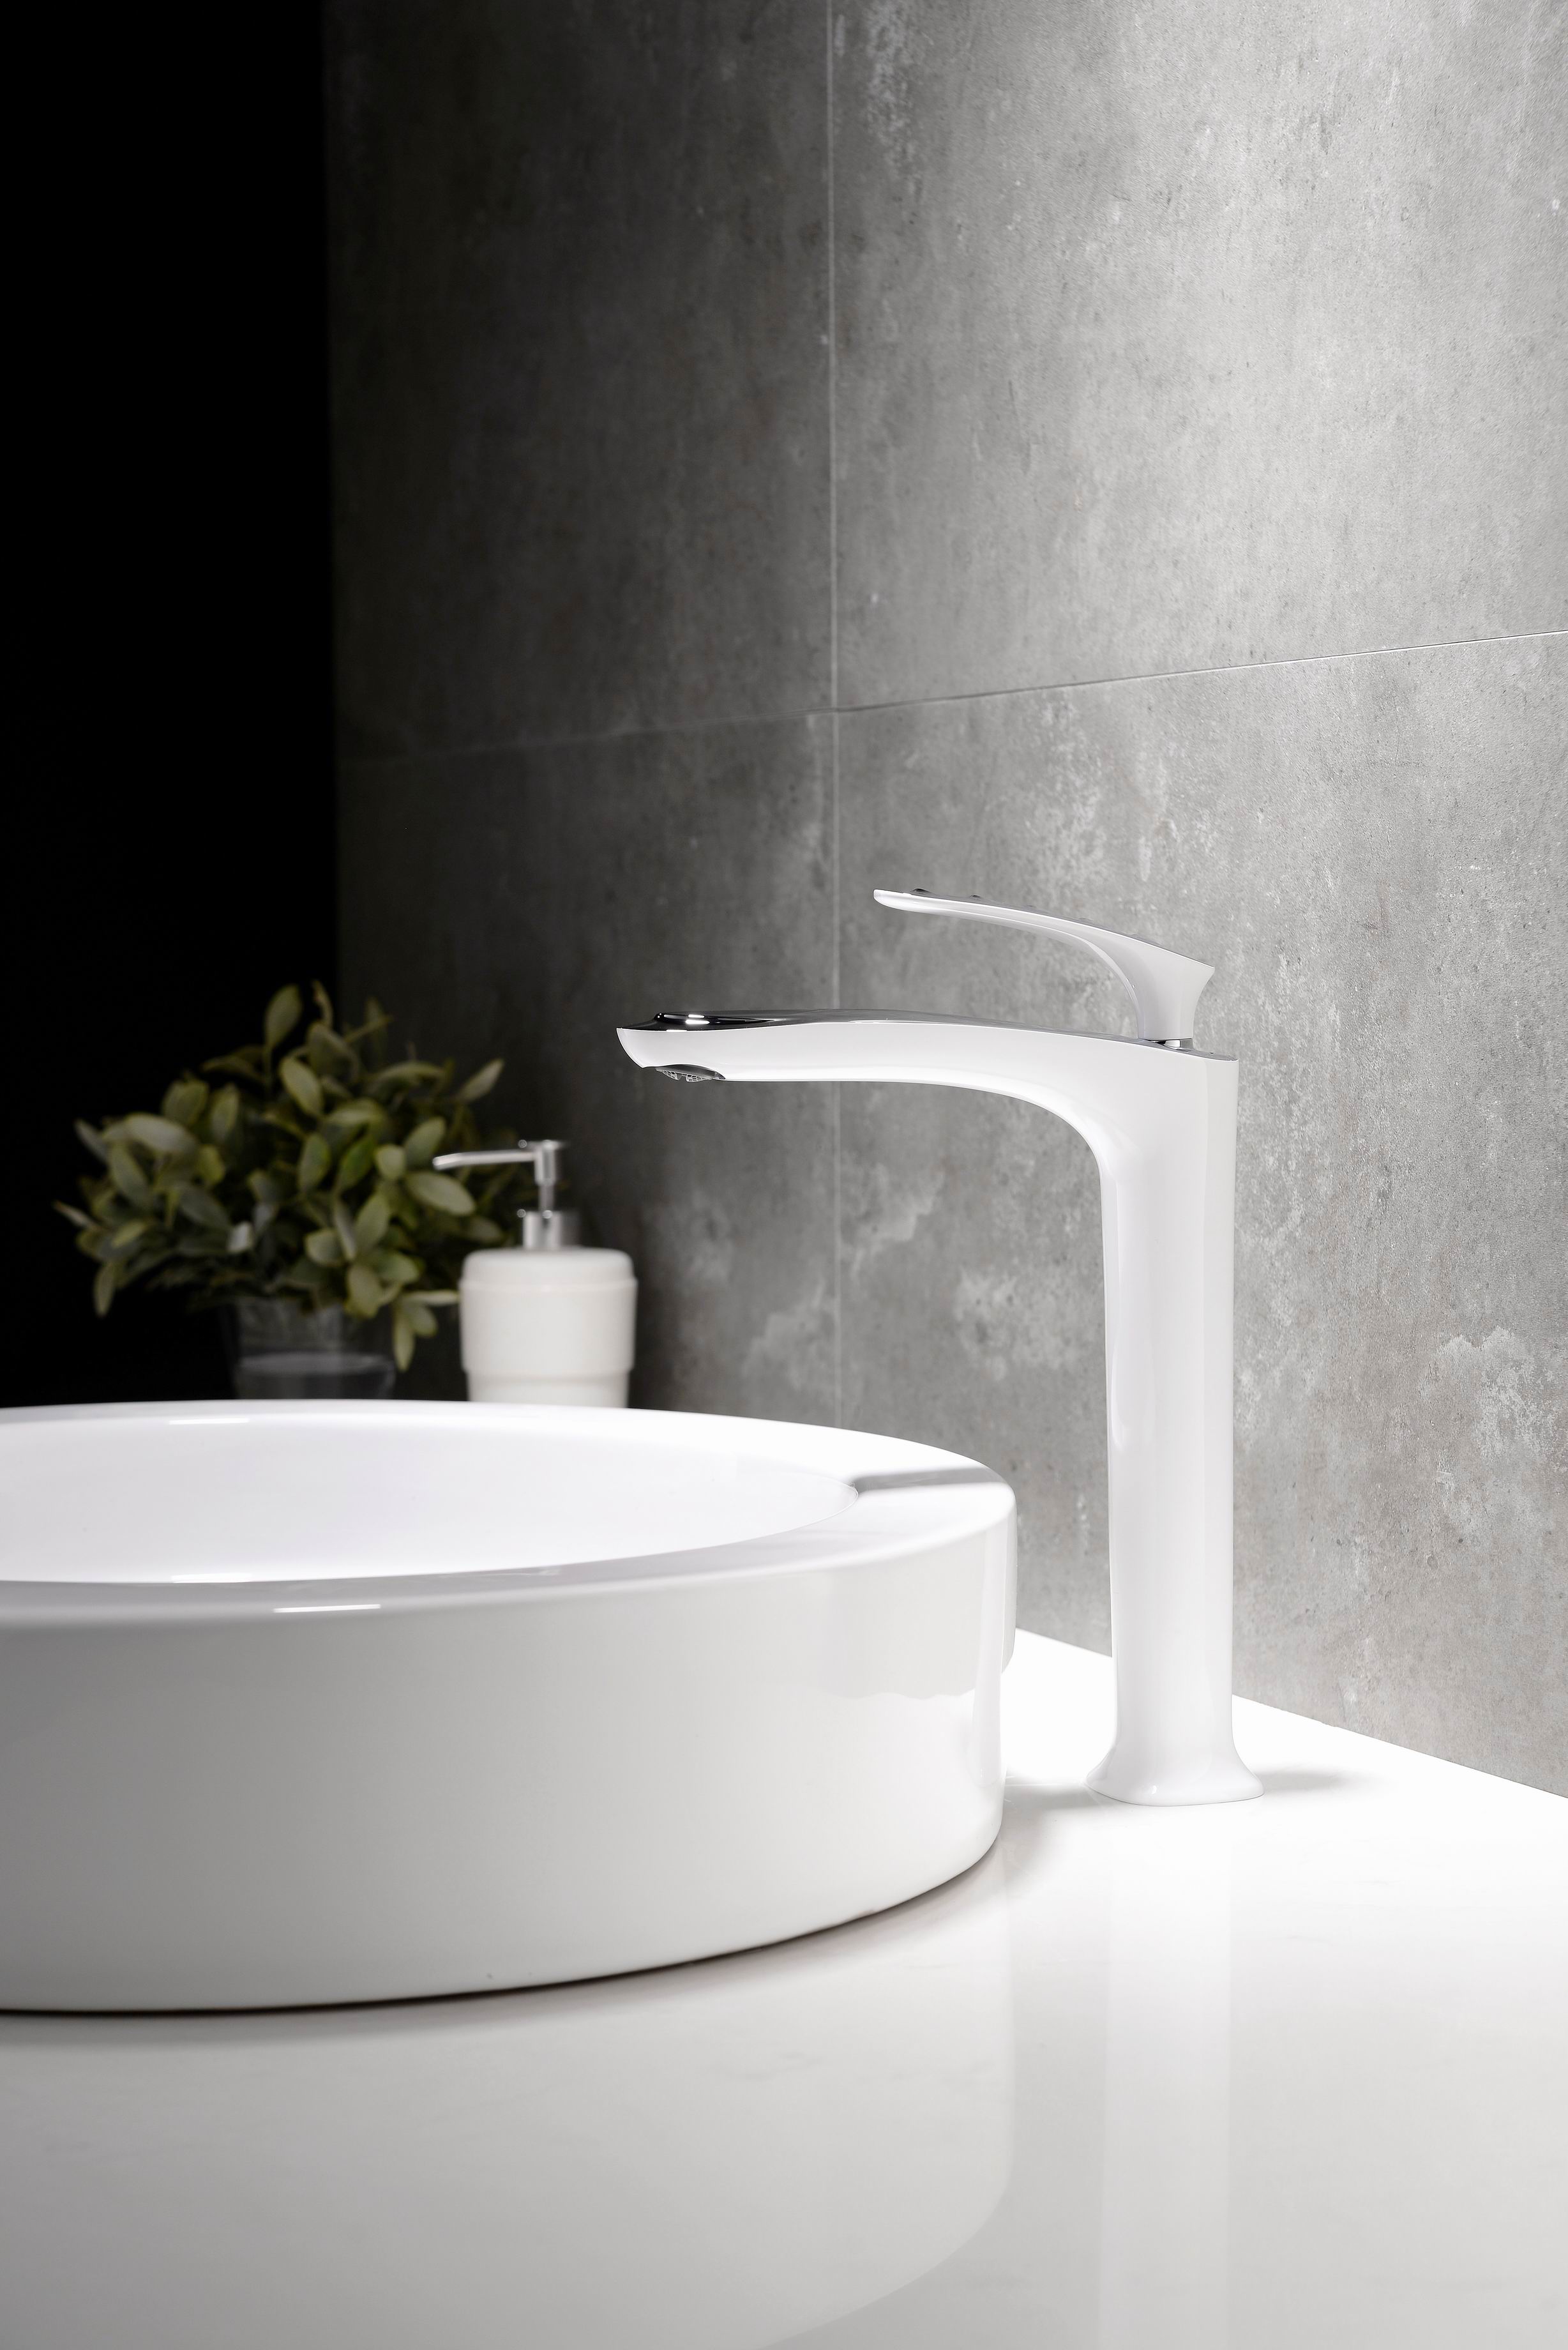 حنفية حمام بمقبض مفرد بتصميم براءة اختراع ، حنفية حمام من سلسلة Dolphin